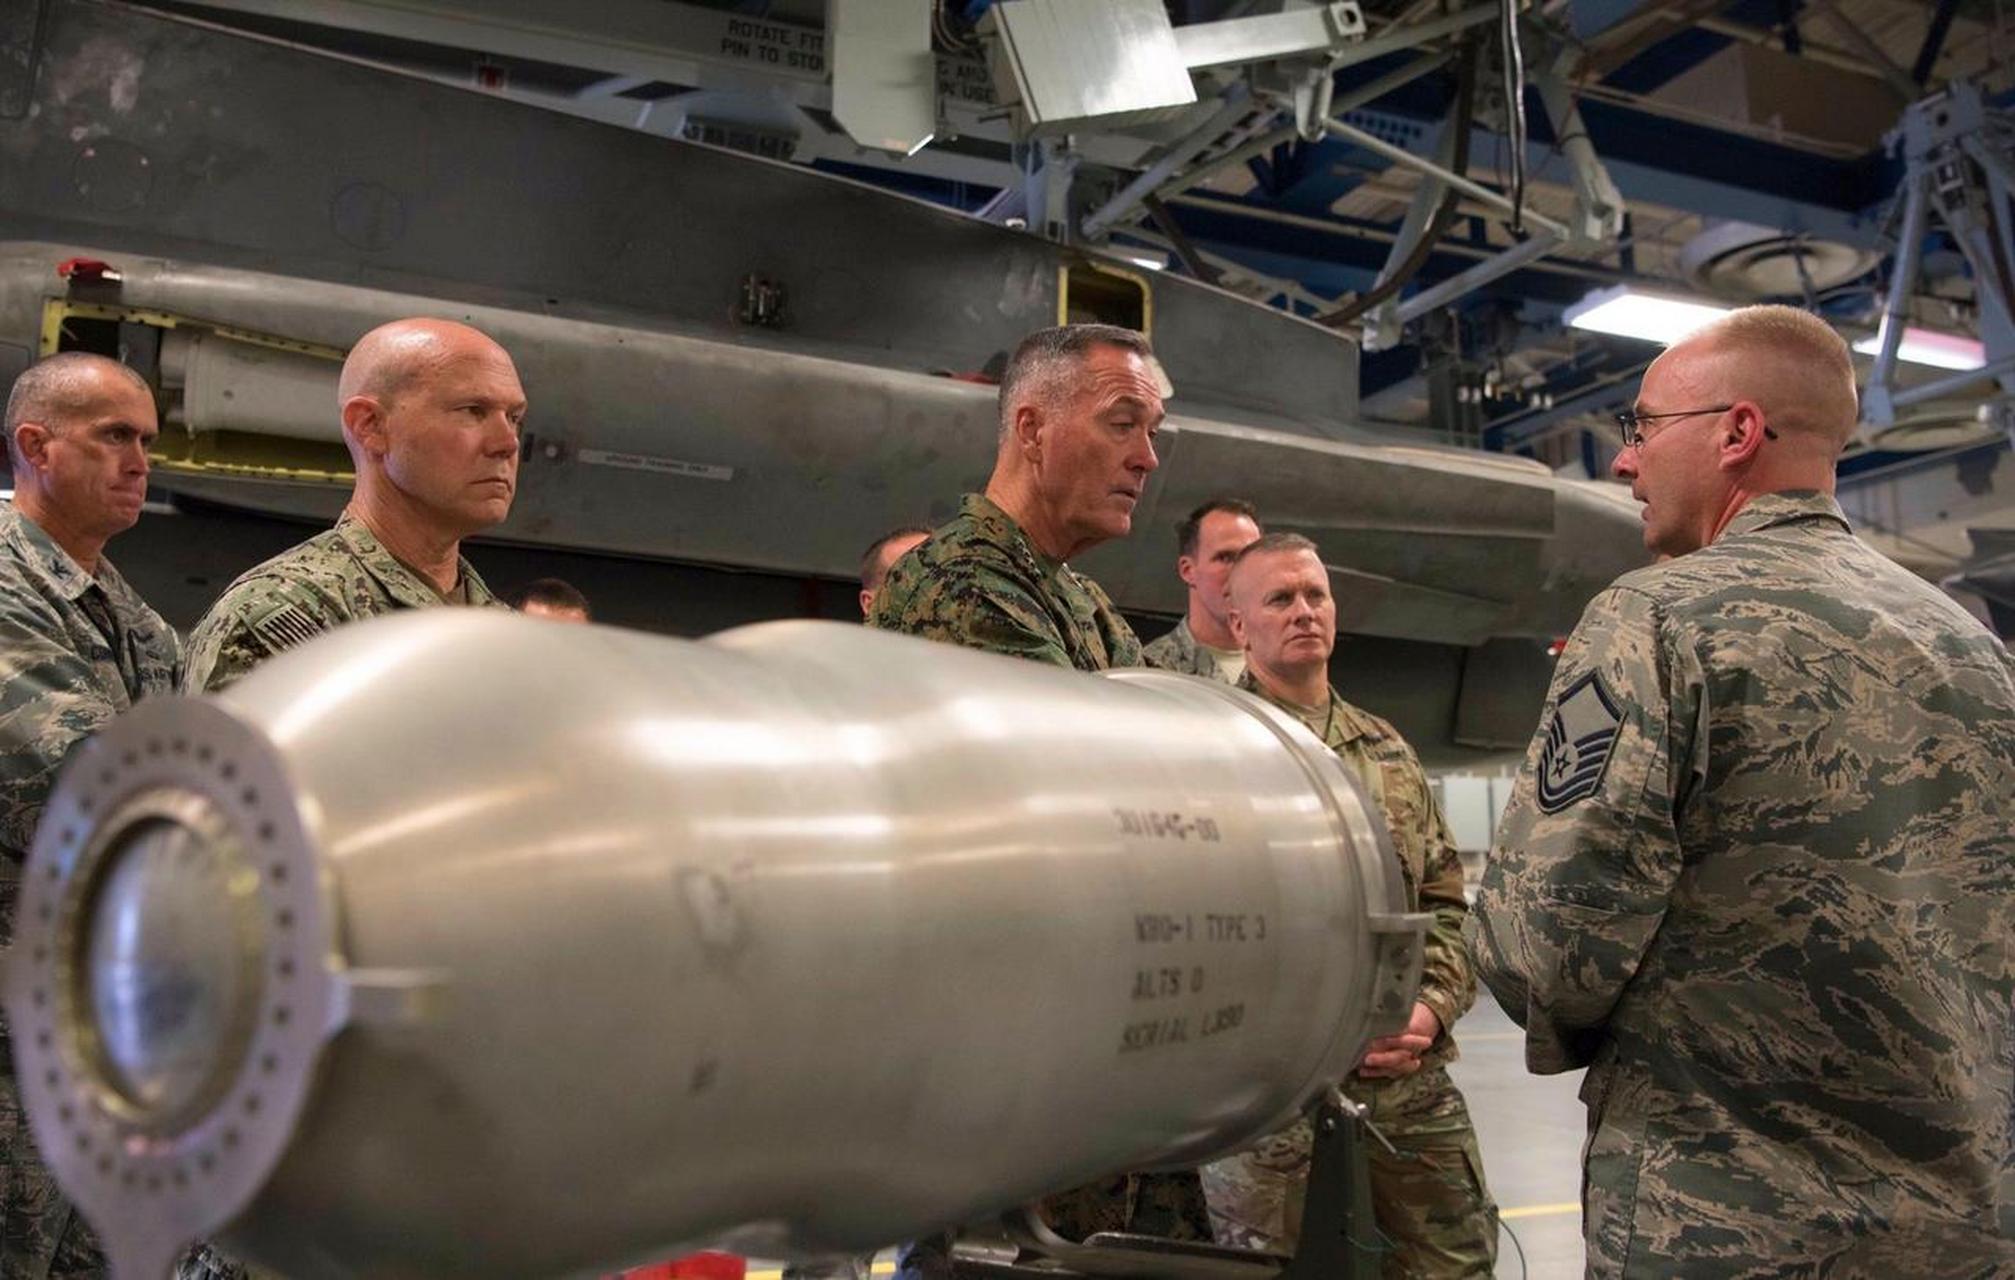 非常罕见的美军w80核弹头图片(图1~图2),外形上就像一个罐子,重量为7